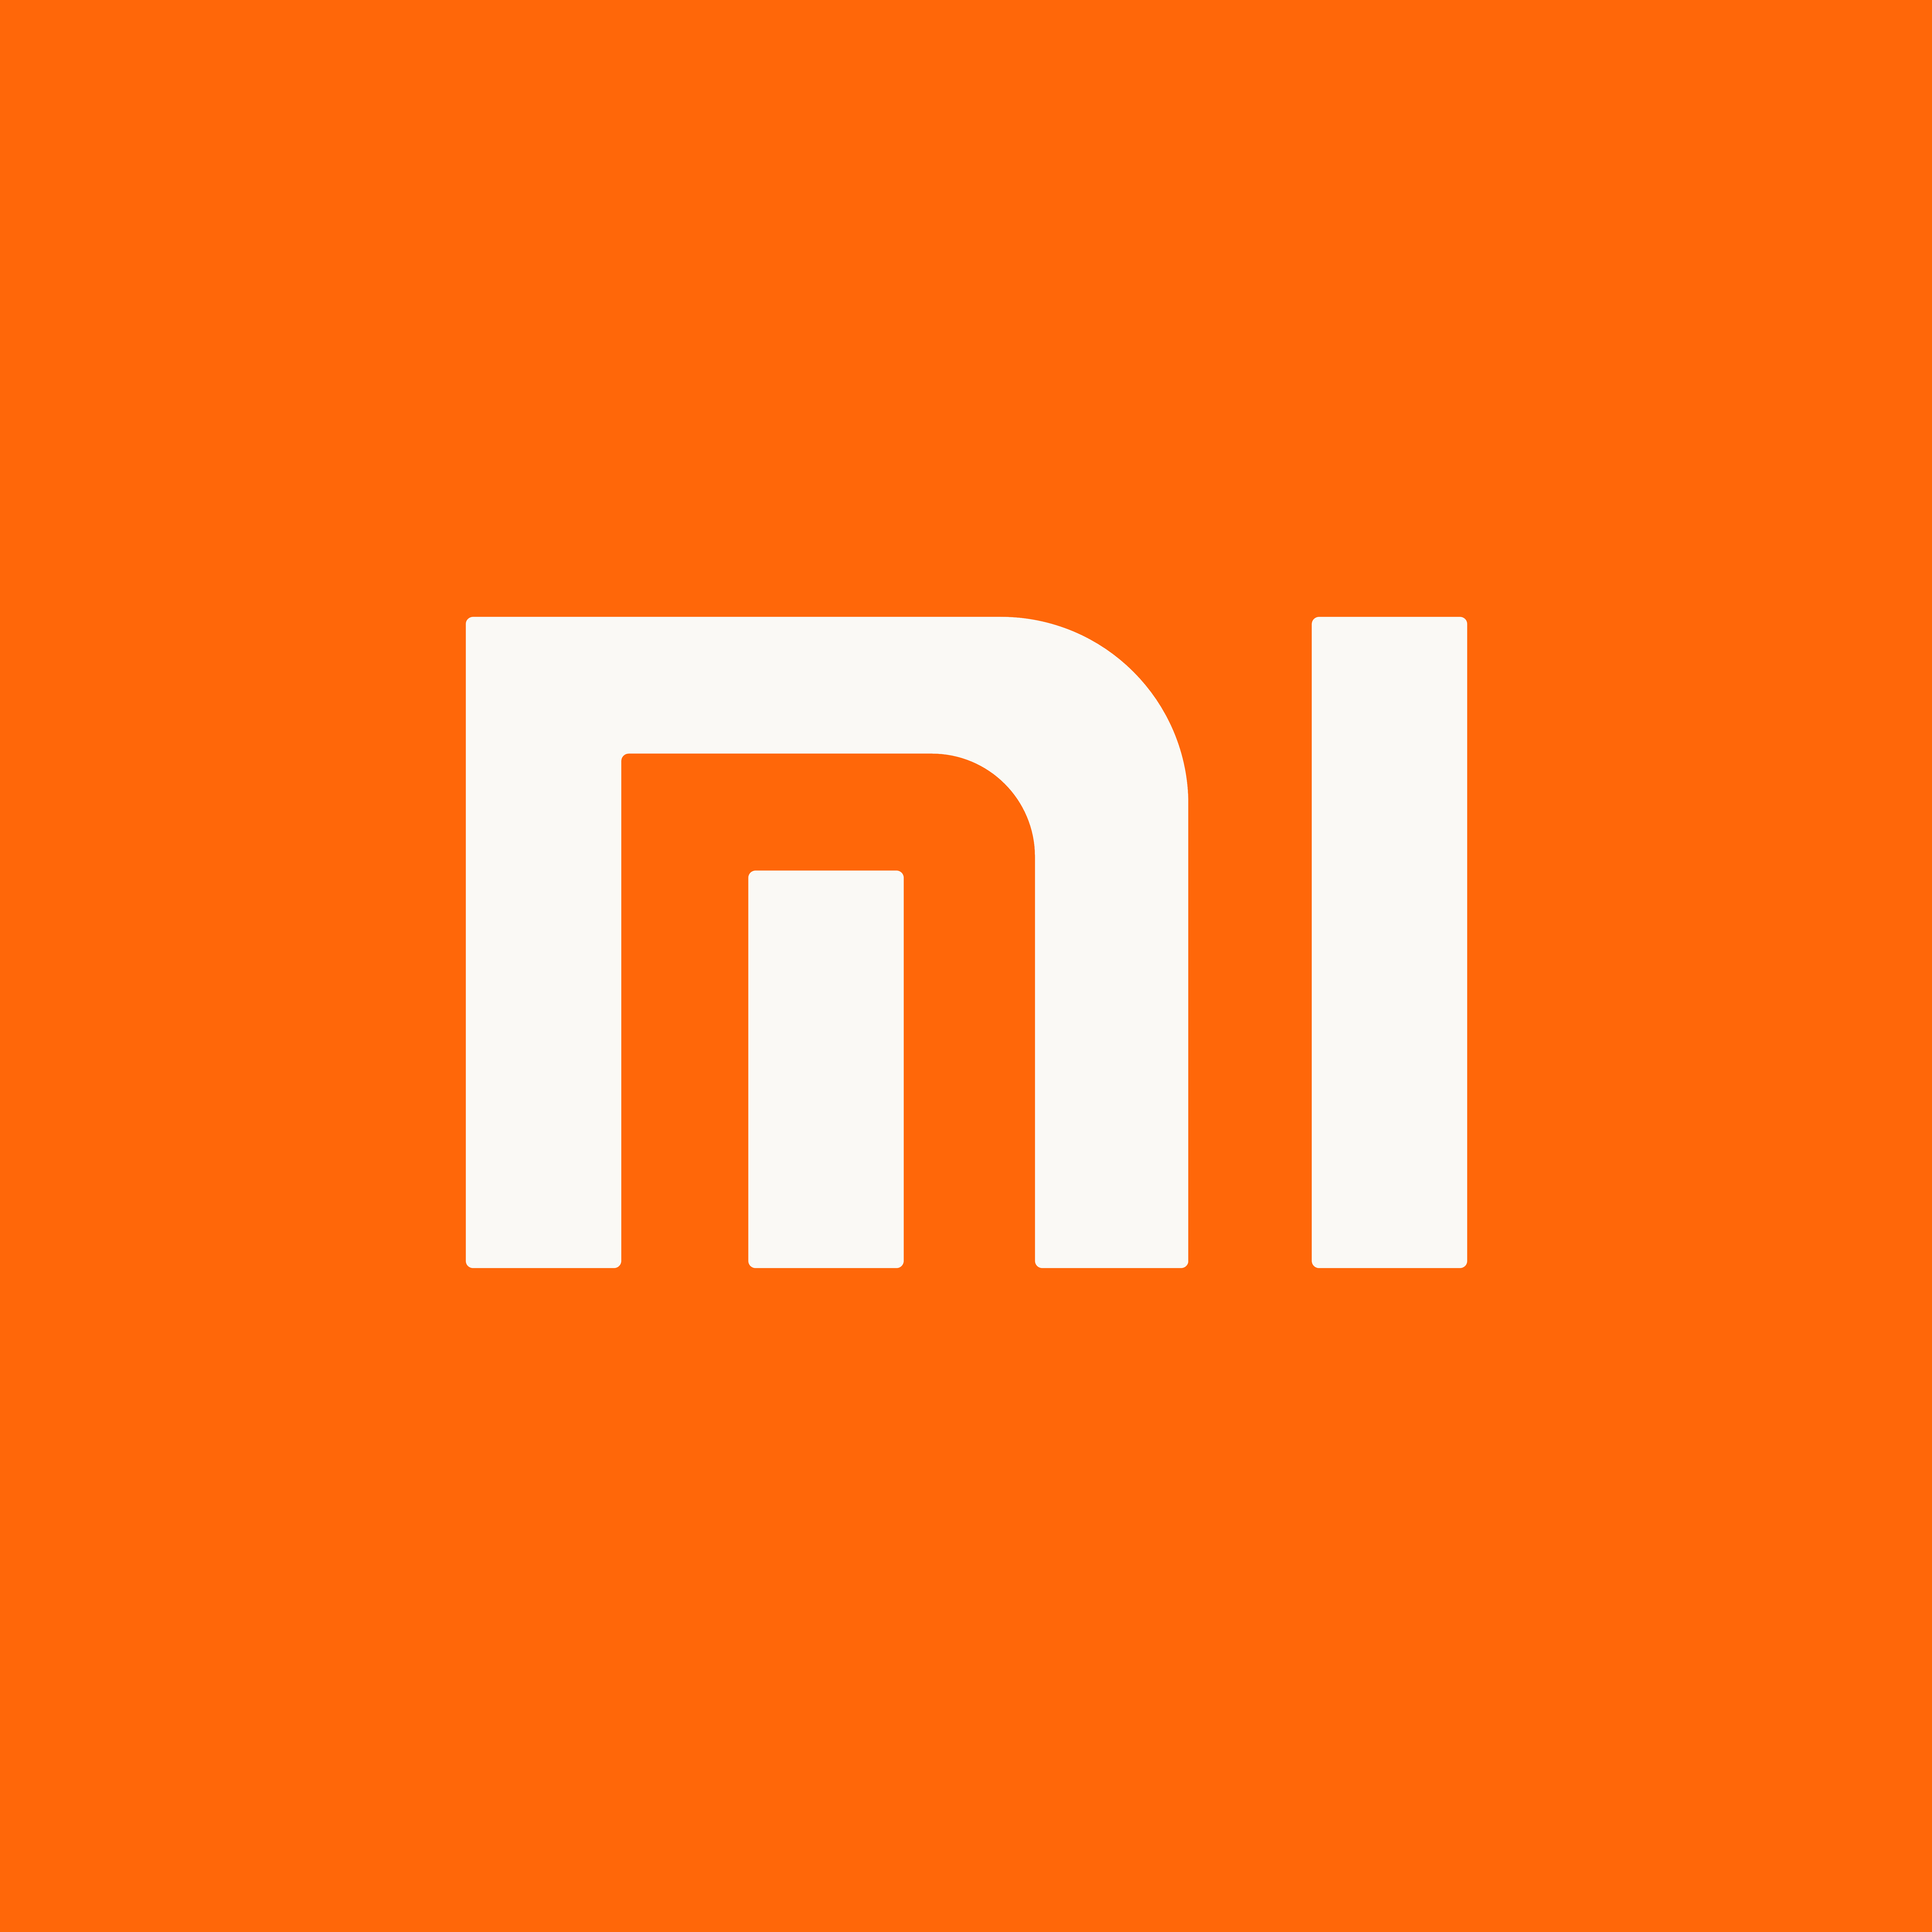 Xiaomi Logos